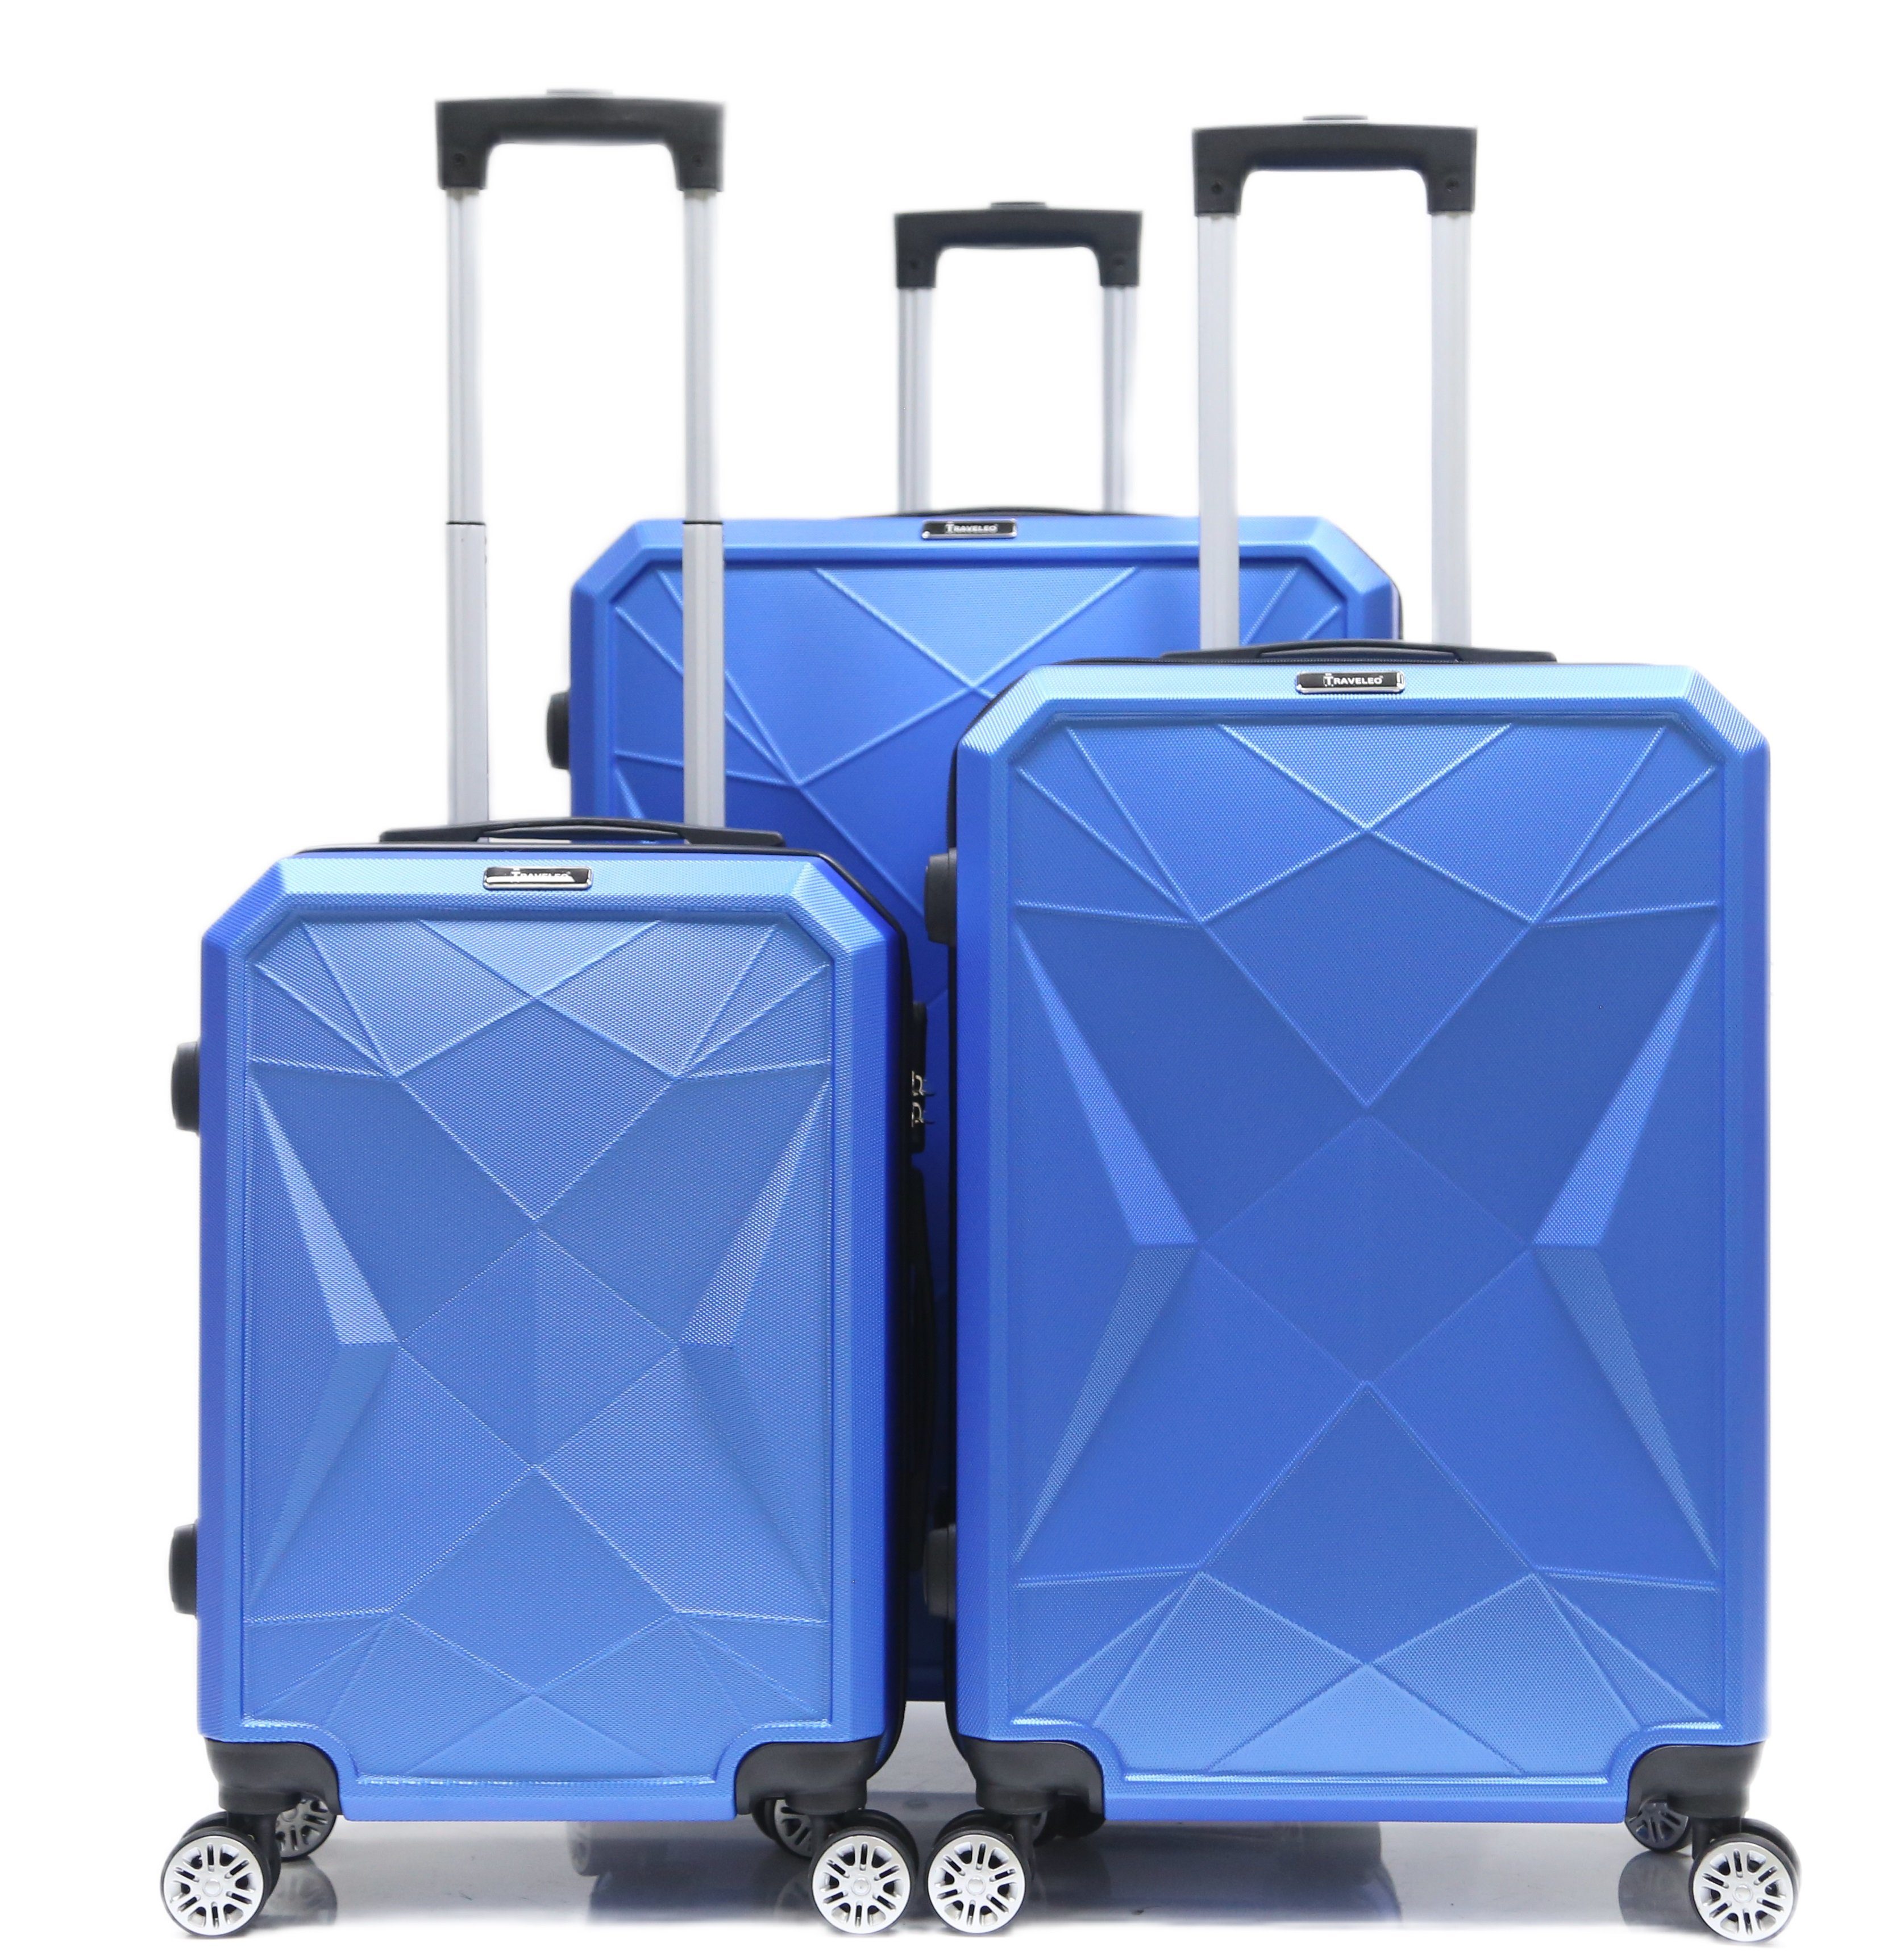 Cheffinger Kofferset Reisekoffer ABS-03 Koffer Trolley Set (3 4 3-teilig Rollen, Kofferset, Blau tlg) Hartschale